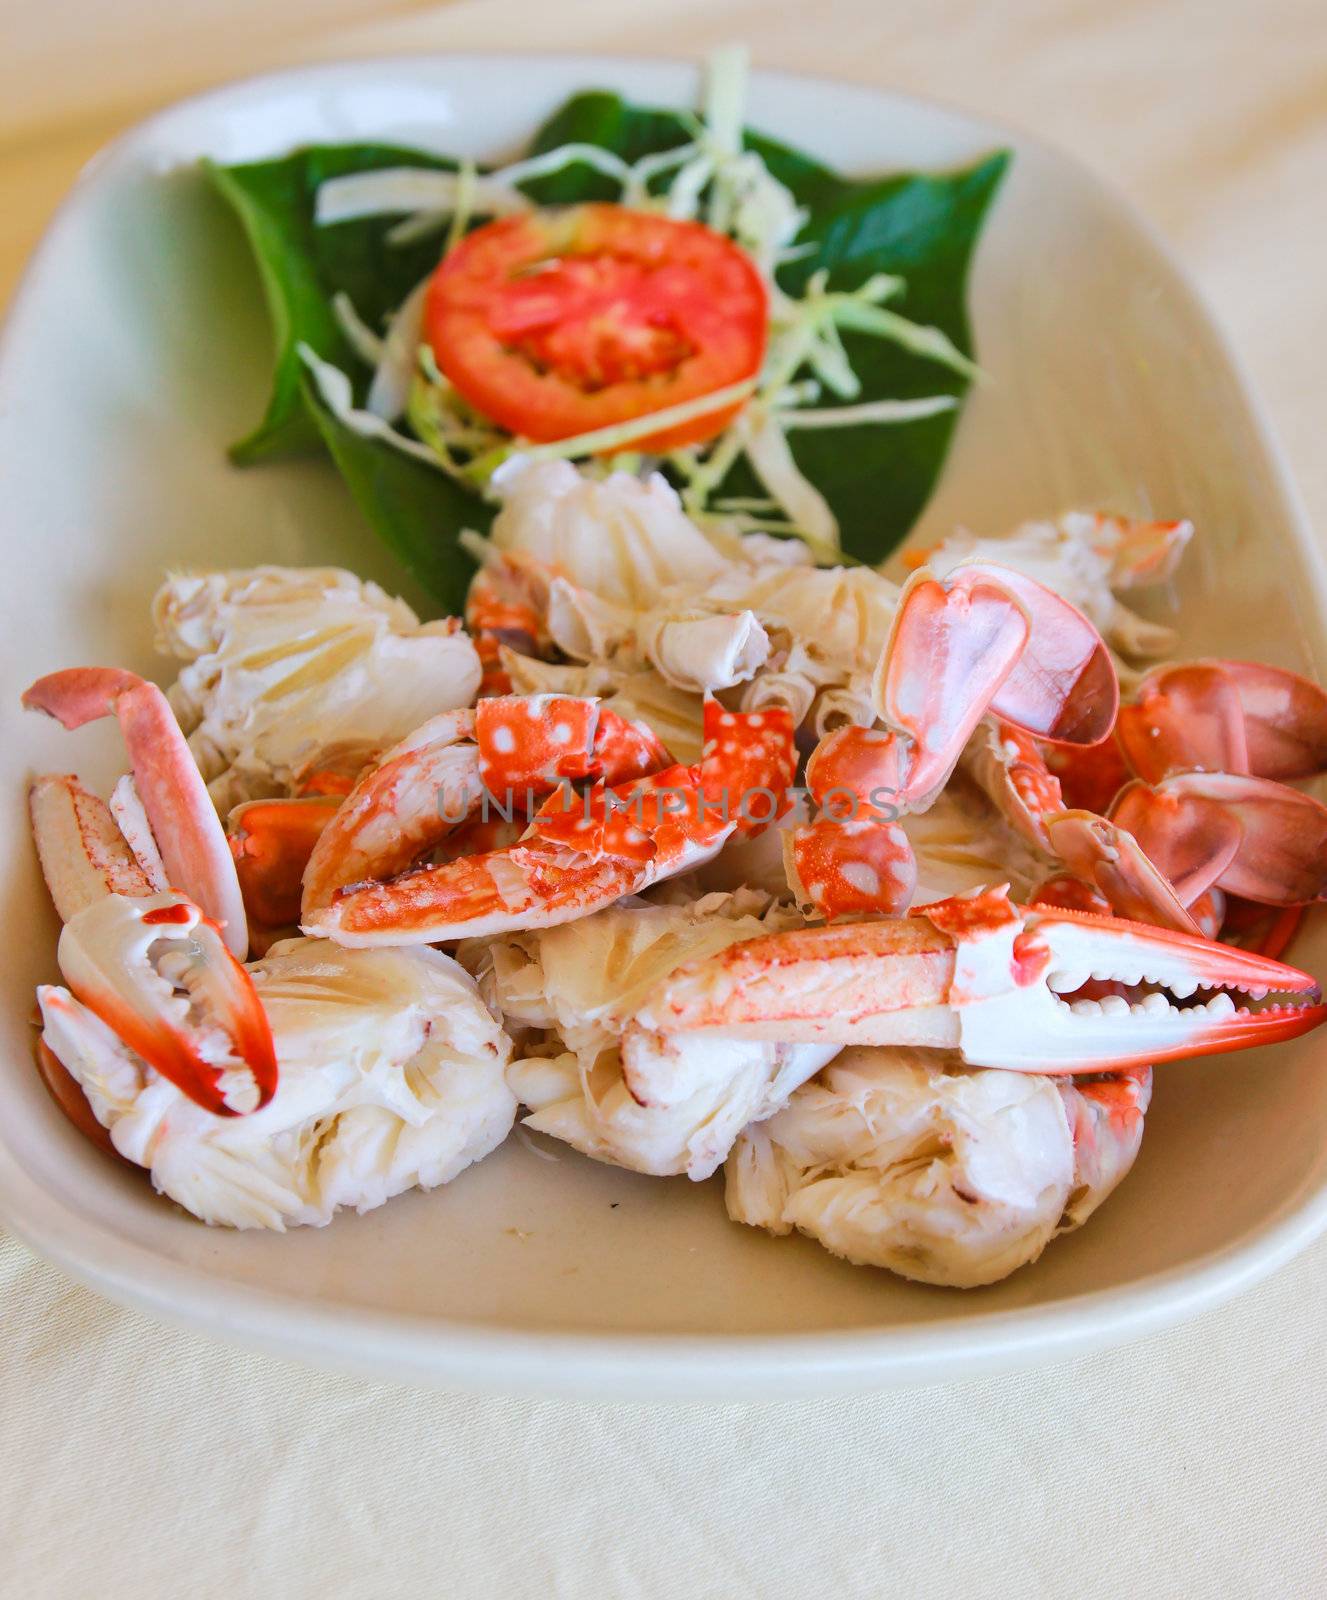 Steamed crab Thai food by nuchylee